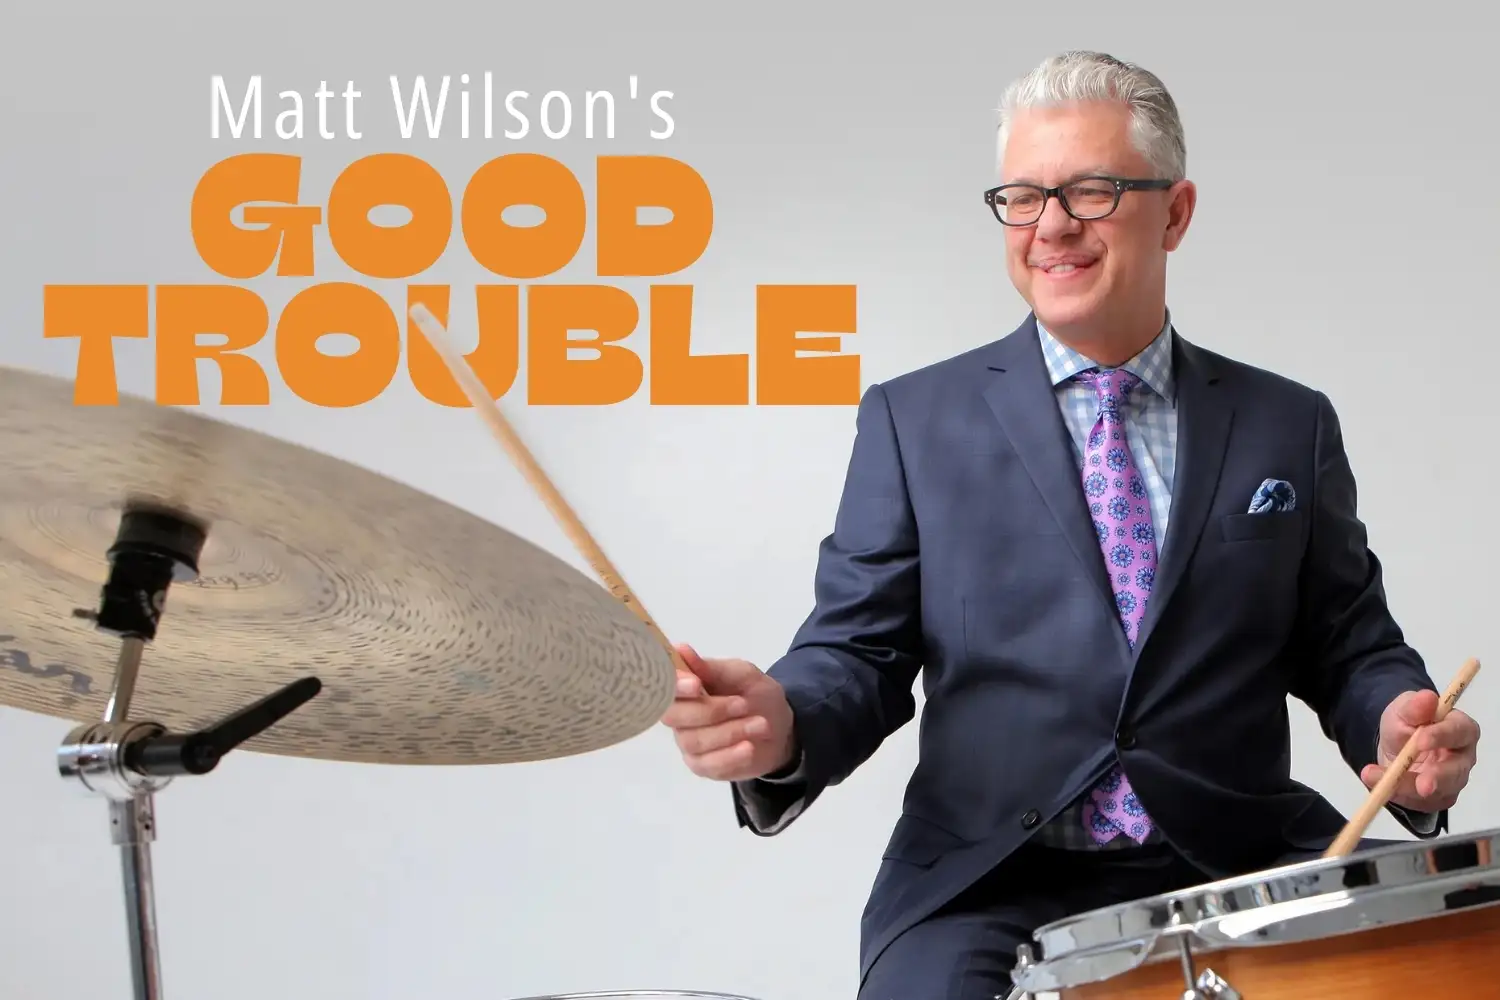 Matt Wilson’s Good Trouble